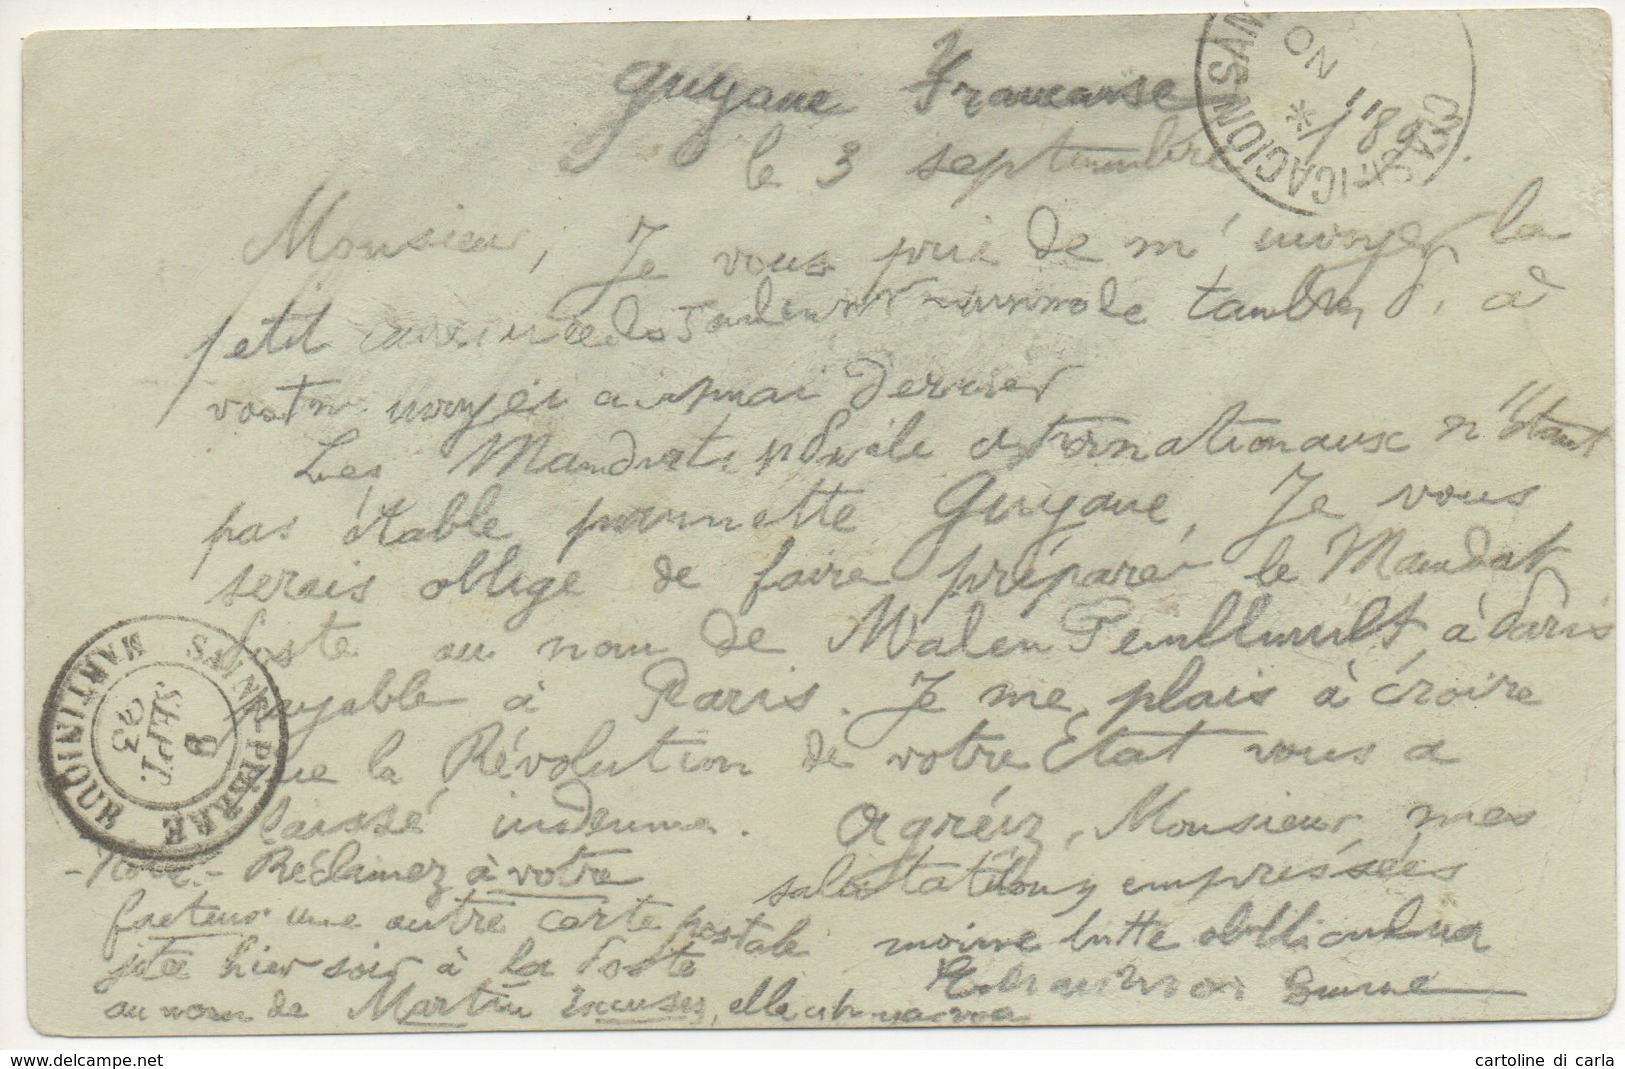 Guyana Francese Cartolina/postcard # 174 - Argentina